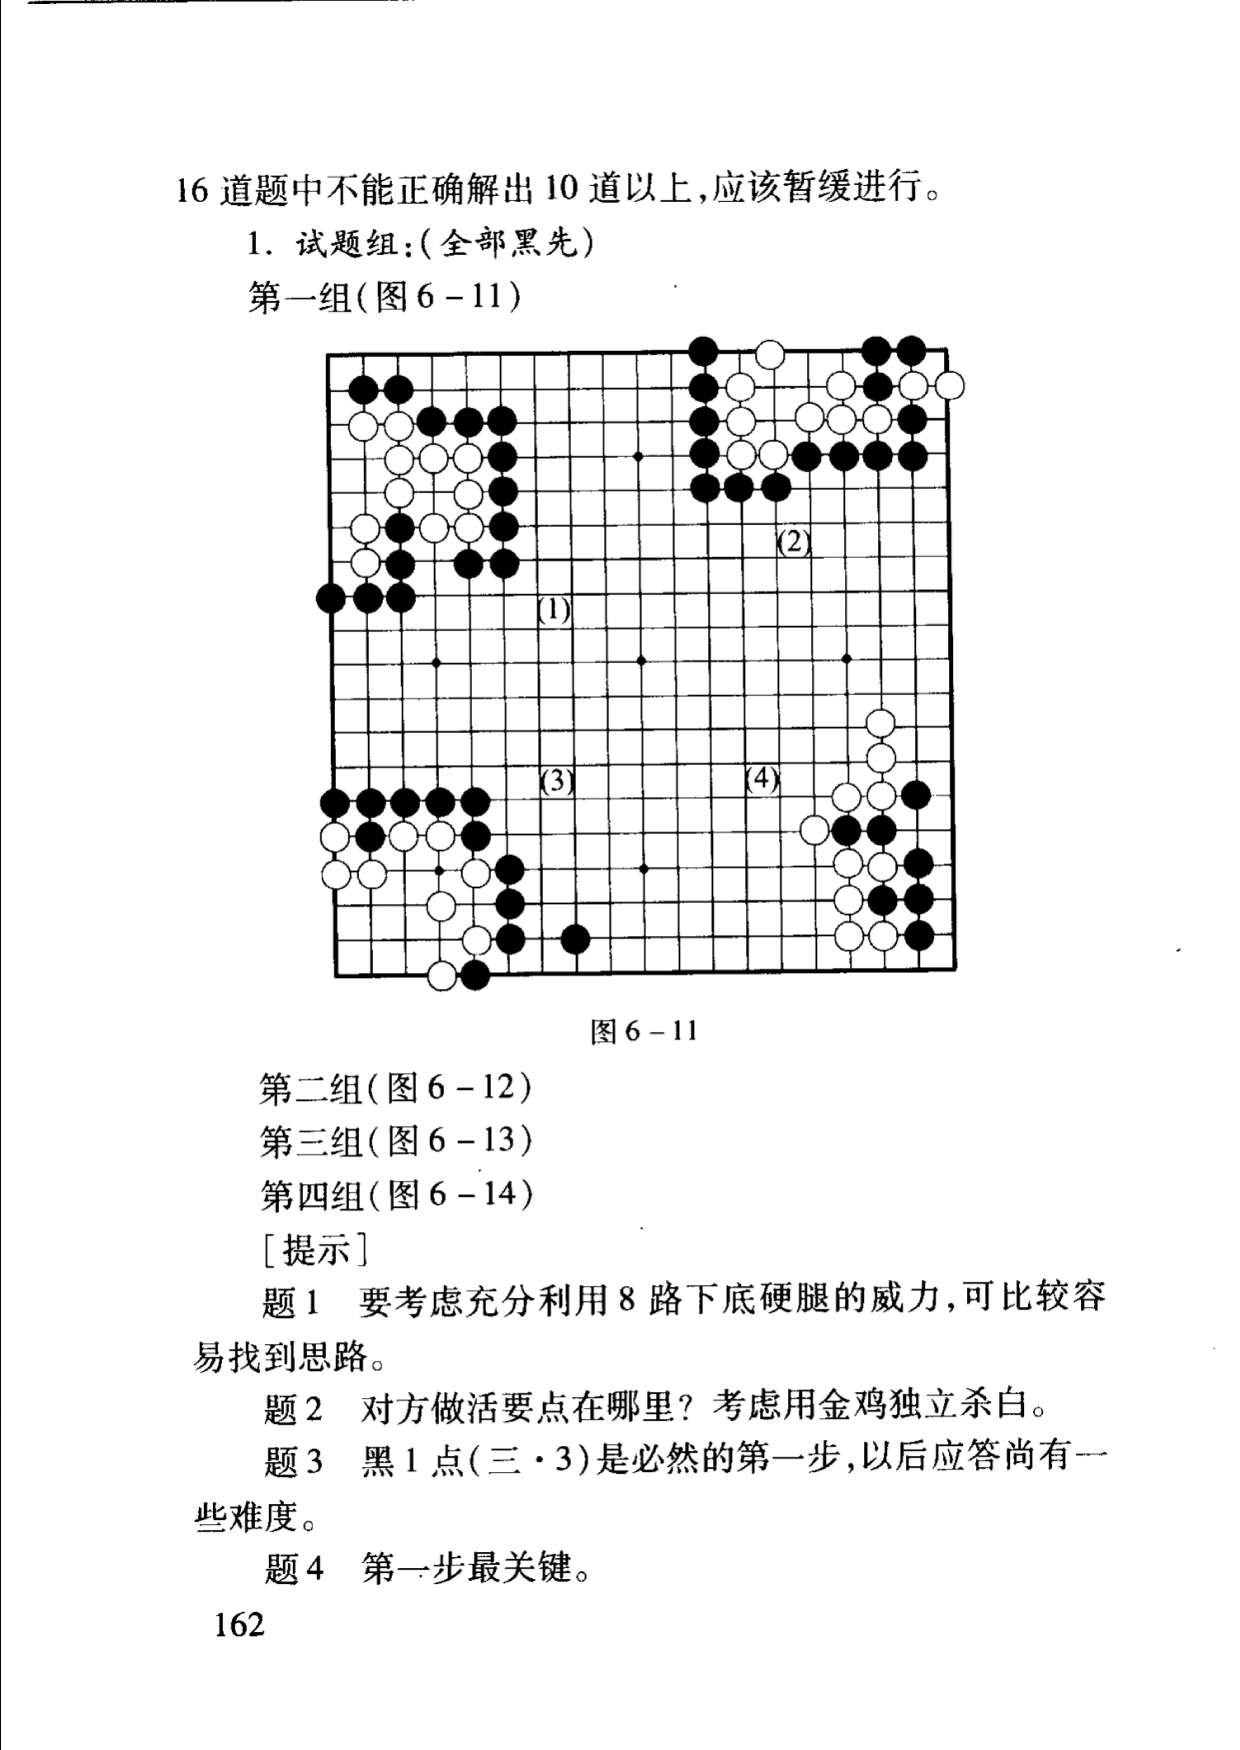 页面提取自－少年儿童学围棋-2.jpg